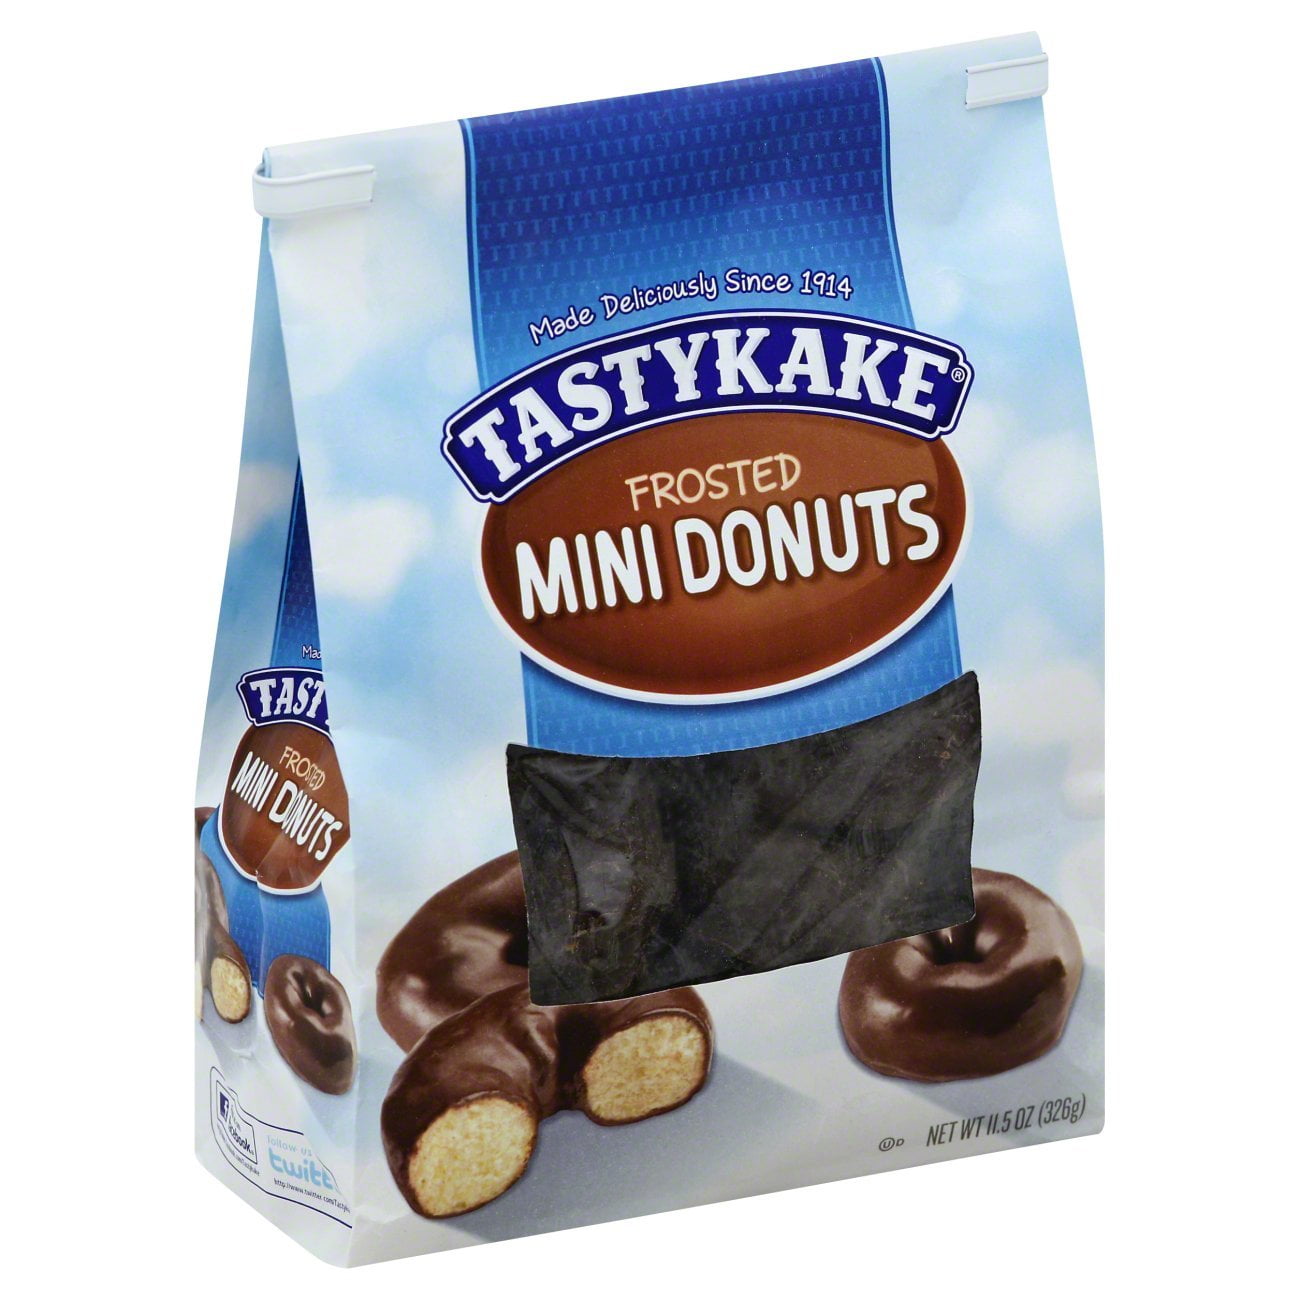 Tastykake Frosted Mini Donuts, THREE 11.5 oz. Bags - Walmart.com ...